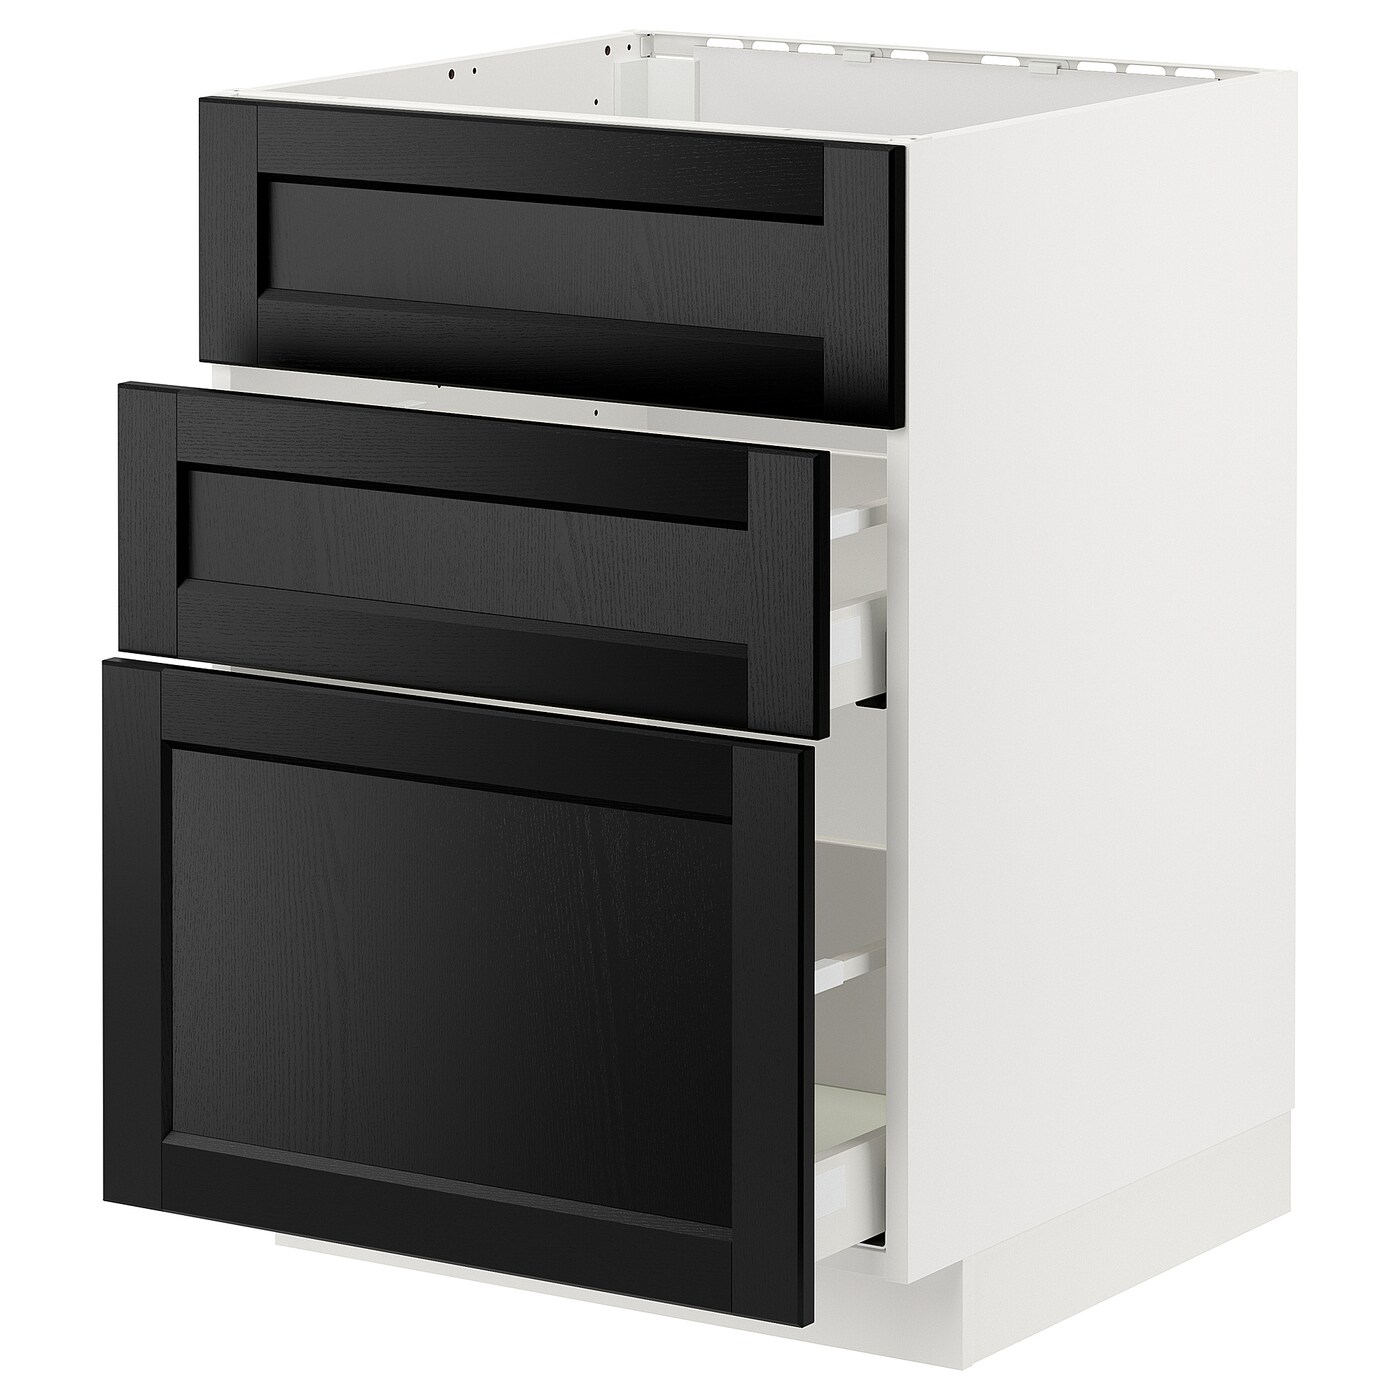 Напольный кухонный шкаф  - IKEA METOD MAXIMERA, 62x80x60см, белый/черный, МЕТОД МАКСИМЕРА ИКЕА